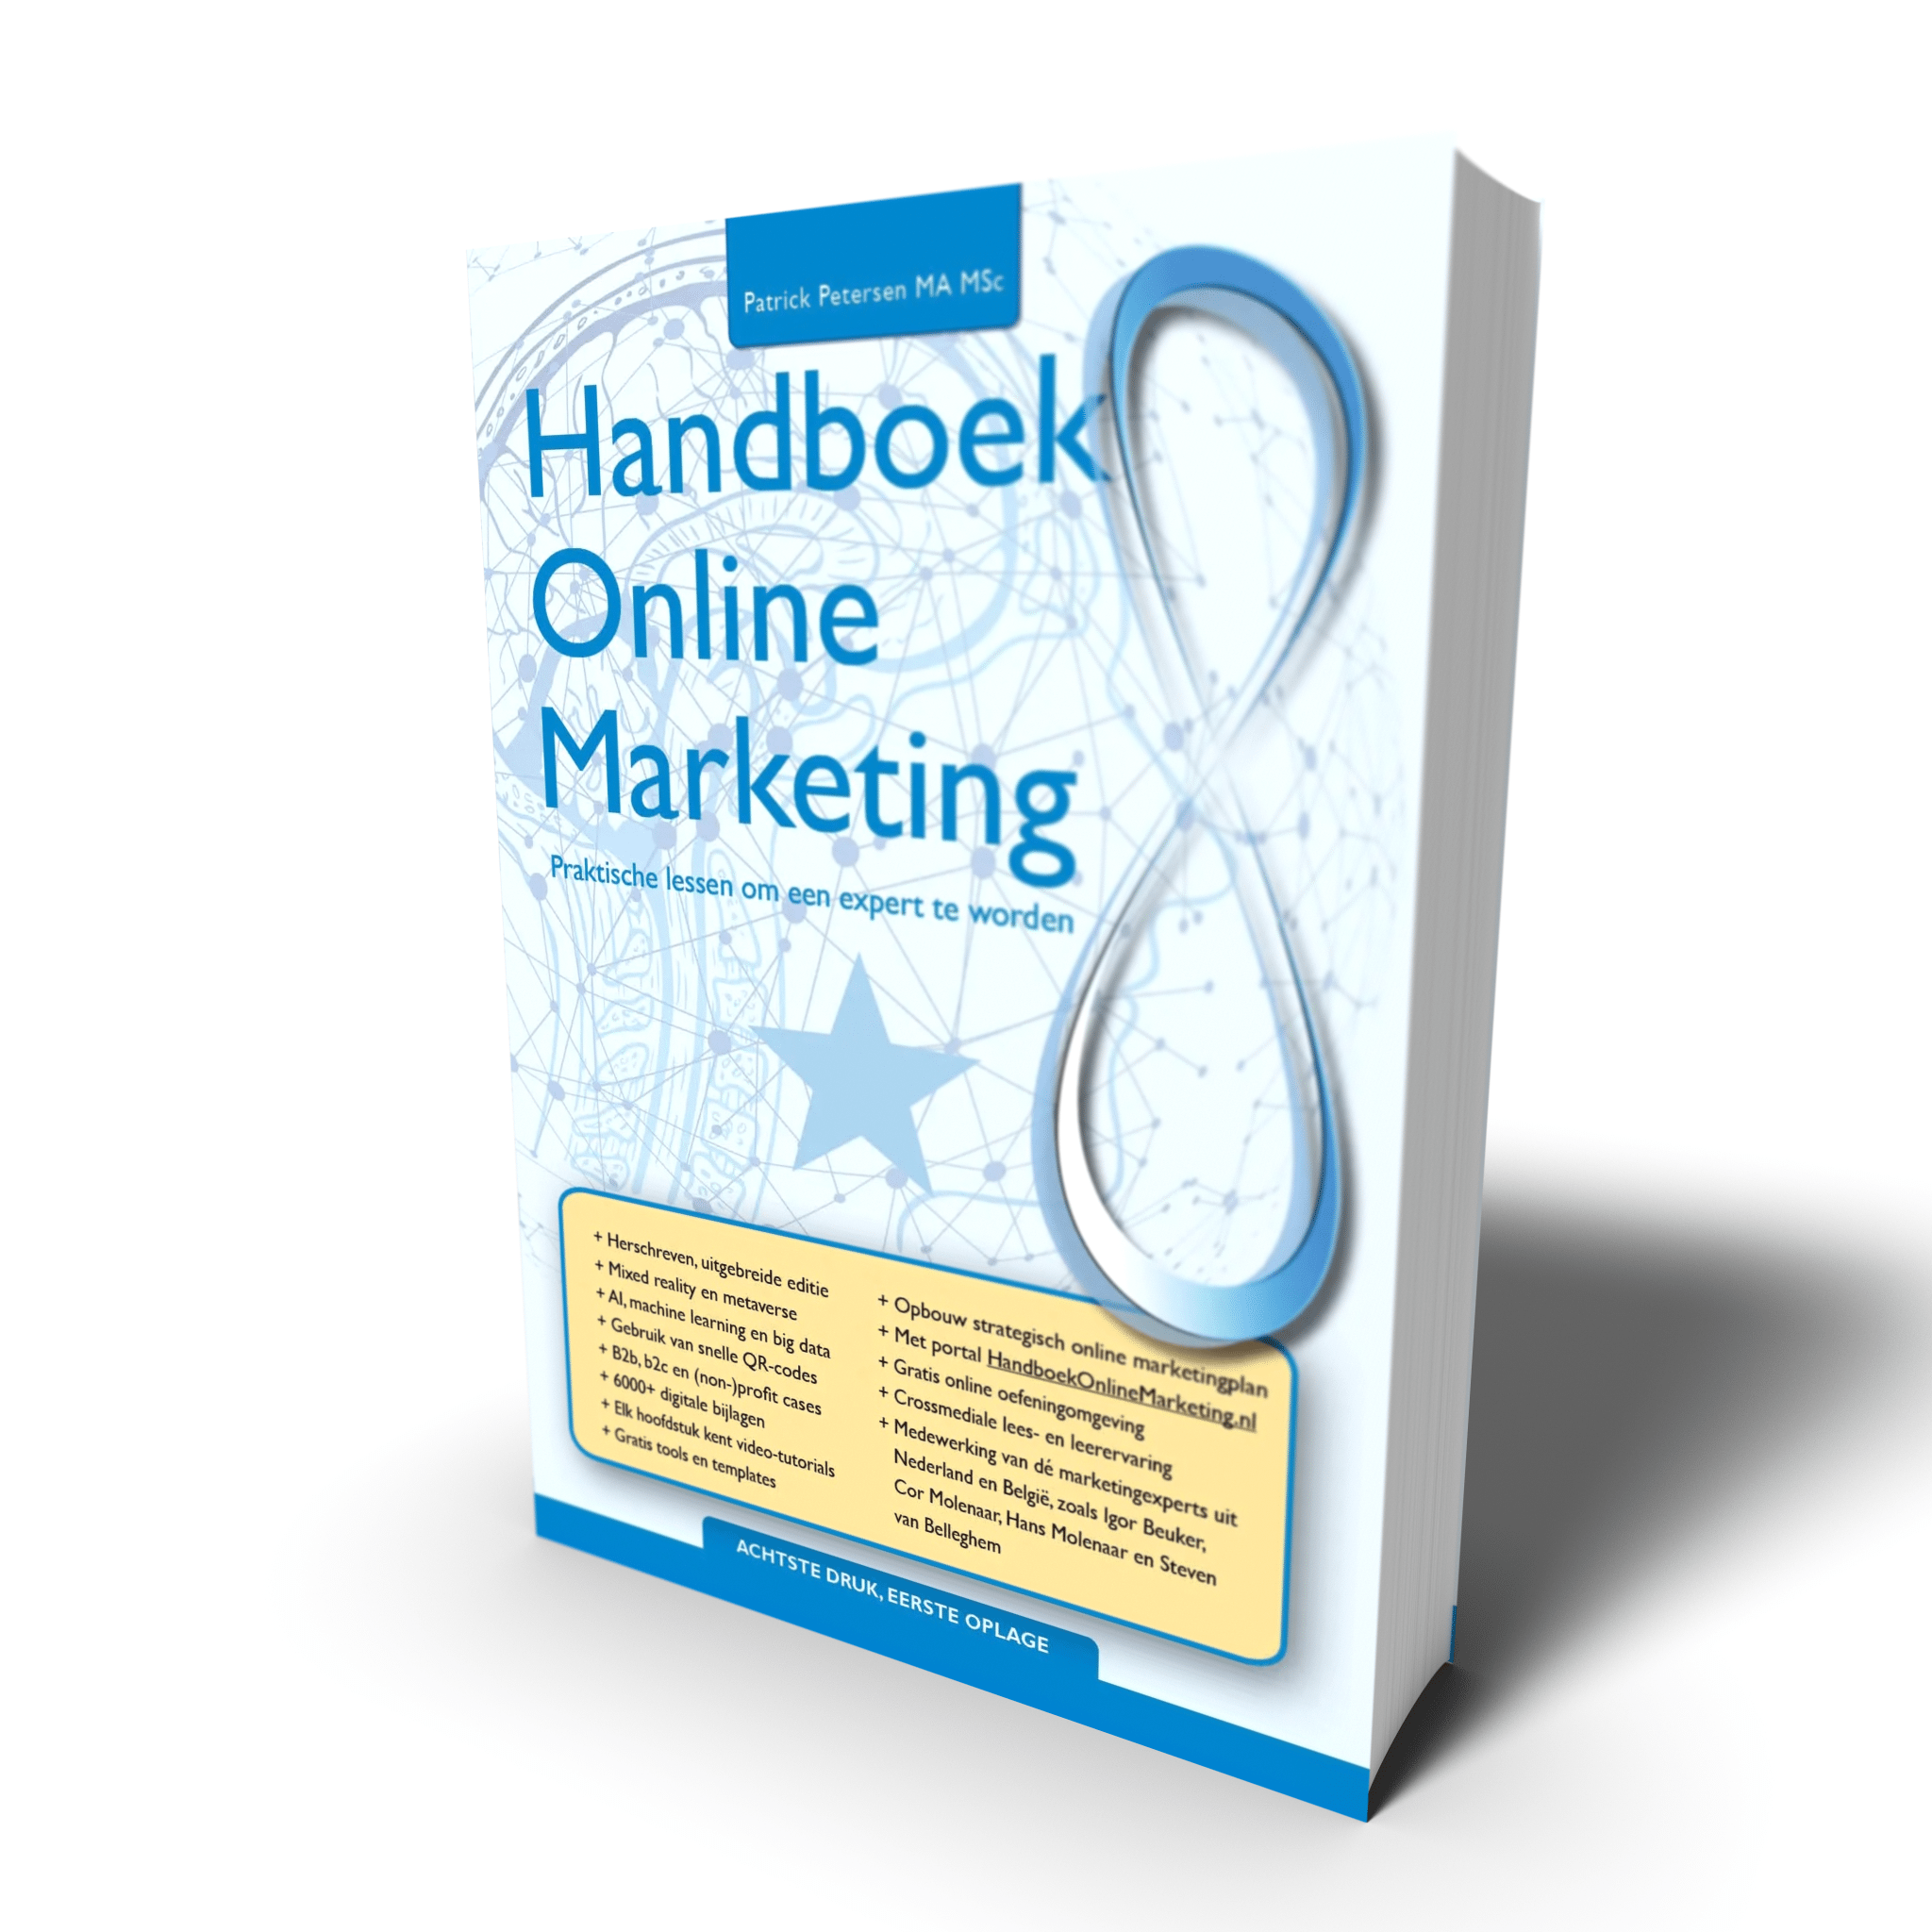 Handboek Online Marketing 8 Patrick Petersen beste online marketing boek